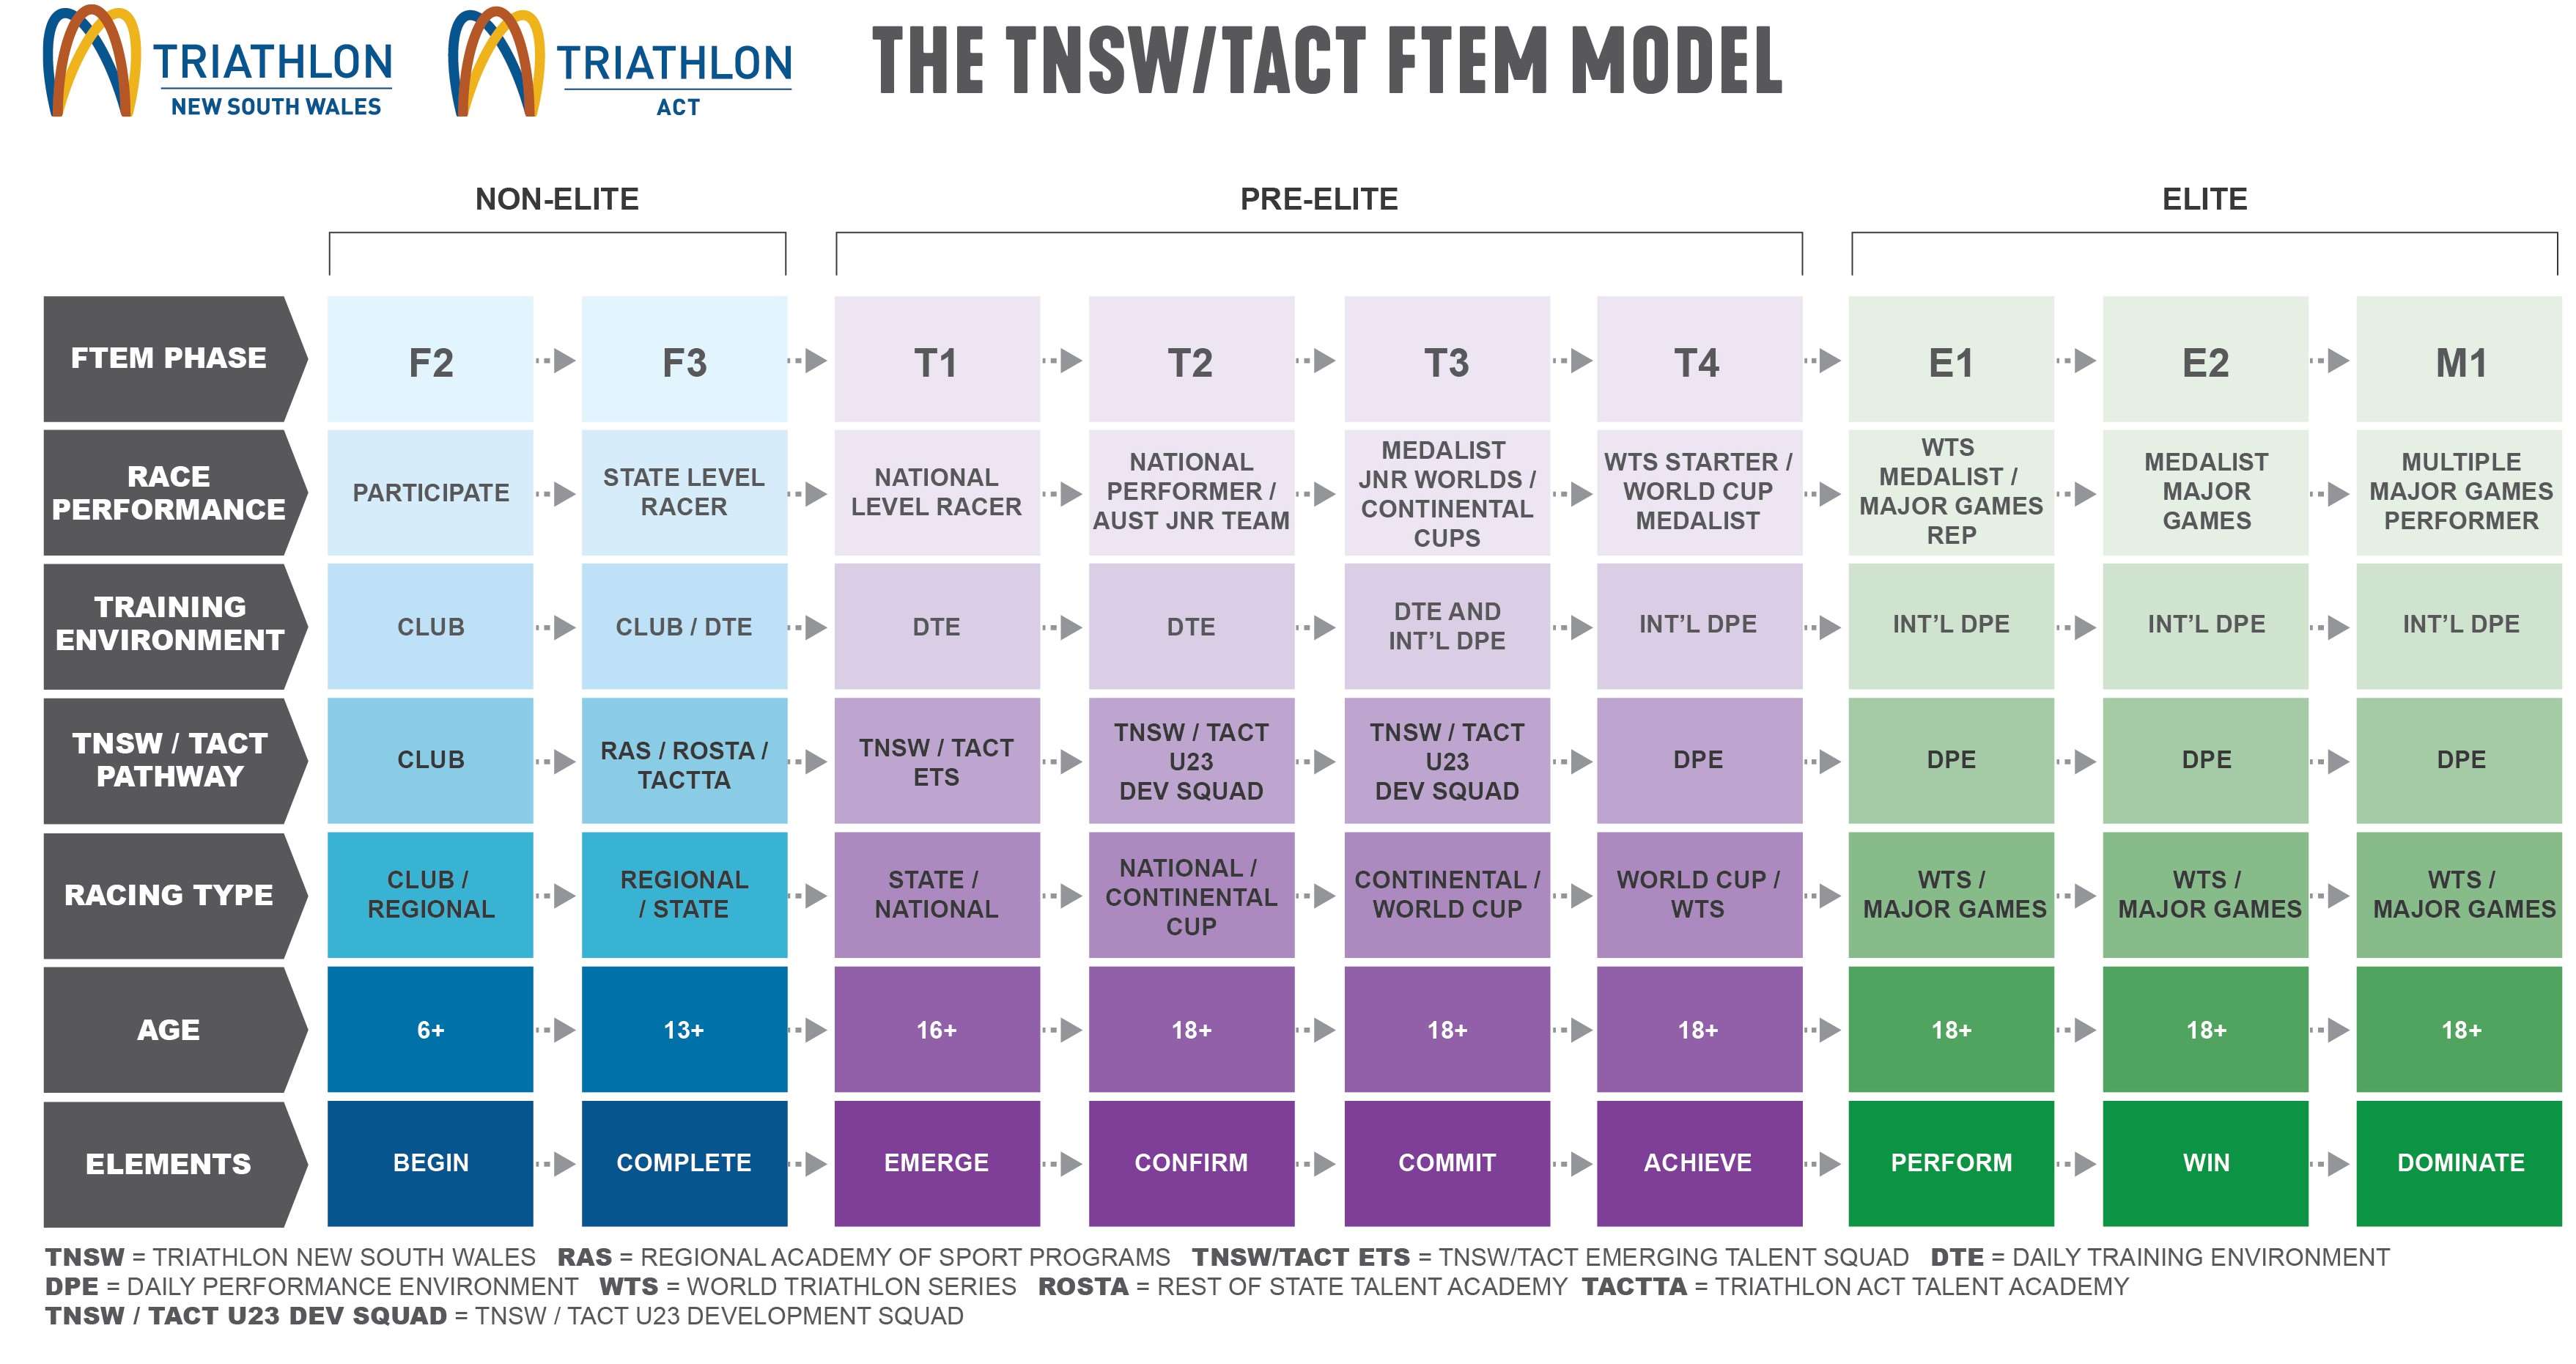 FTEM Model